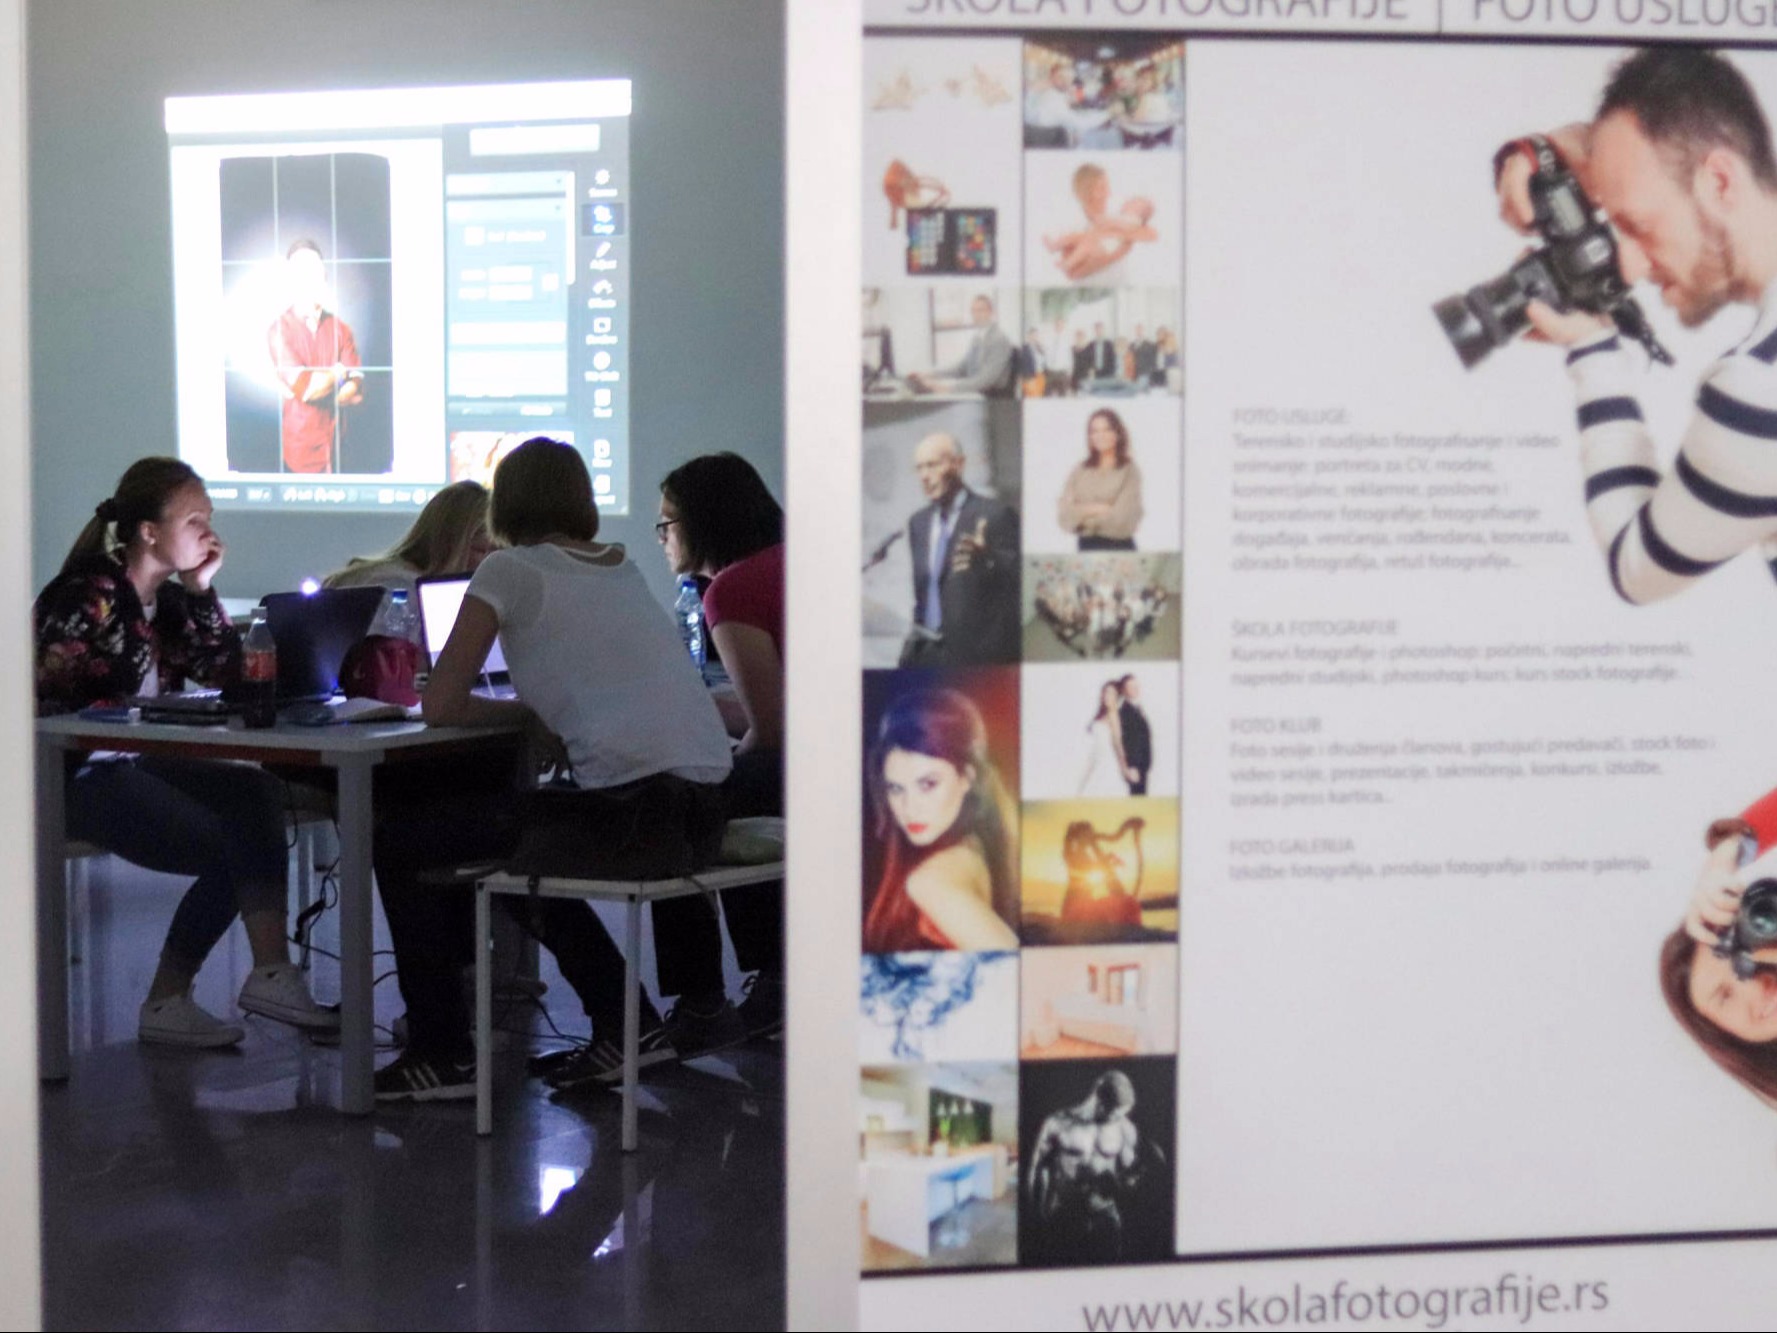 Praktičan rad postprodukcije u programu fotor, u učionici, Škola fotografije Fokus